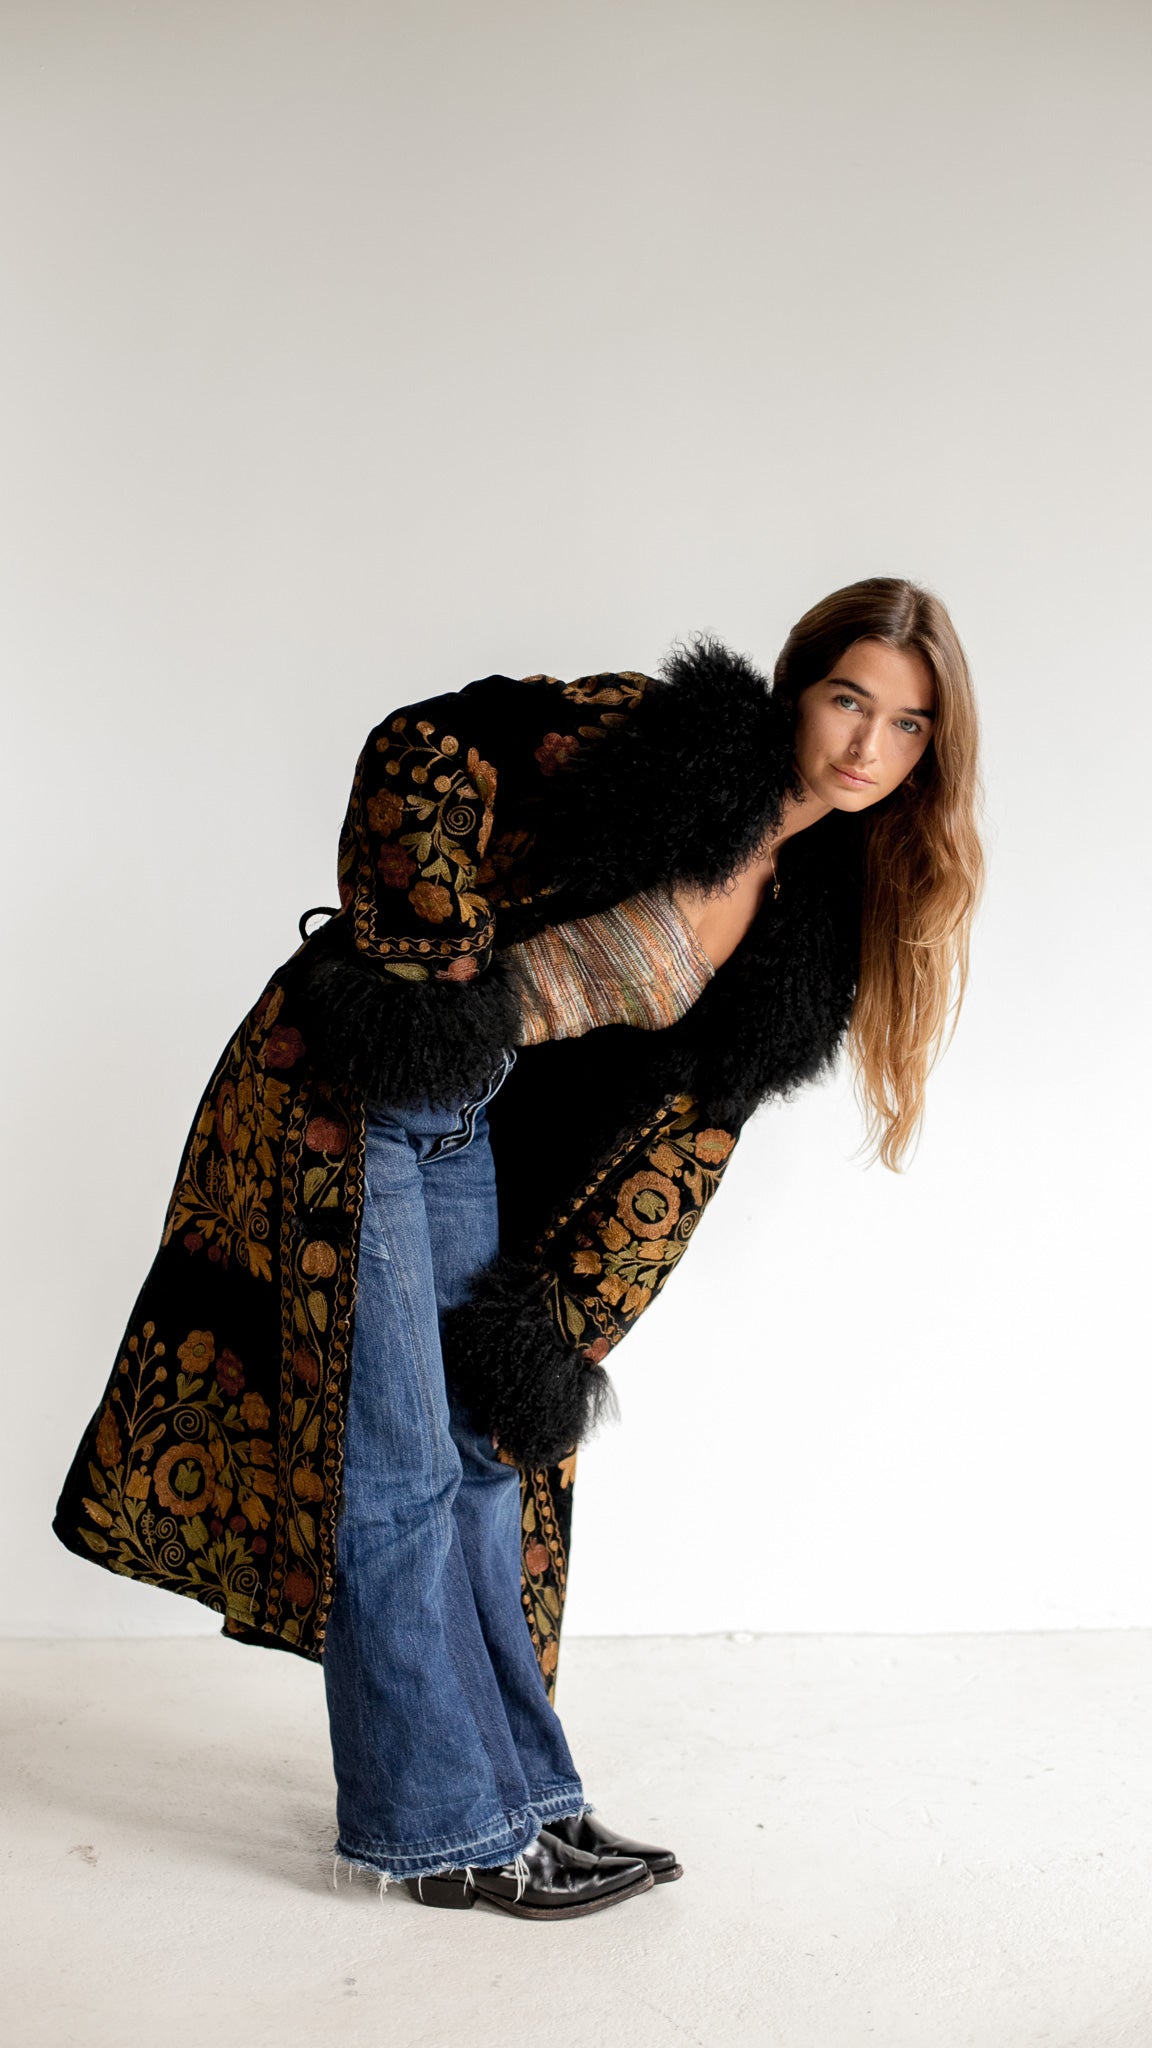 zazi-vintage-ethical-fashion-photographer-andreea-bercu-model-jeff-bogaers-suzani-coat